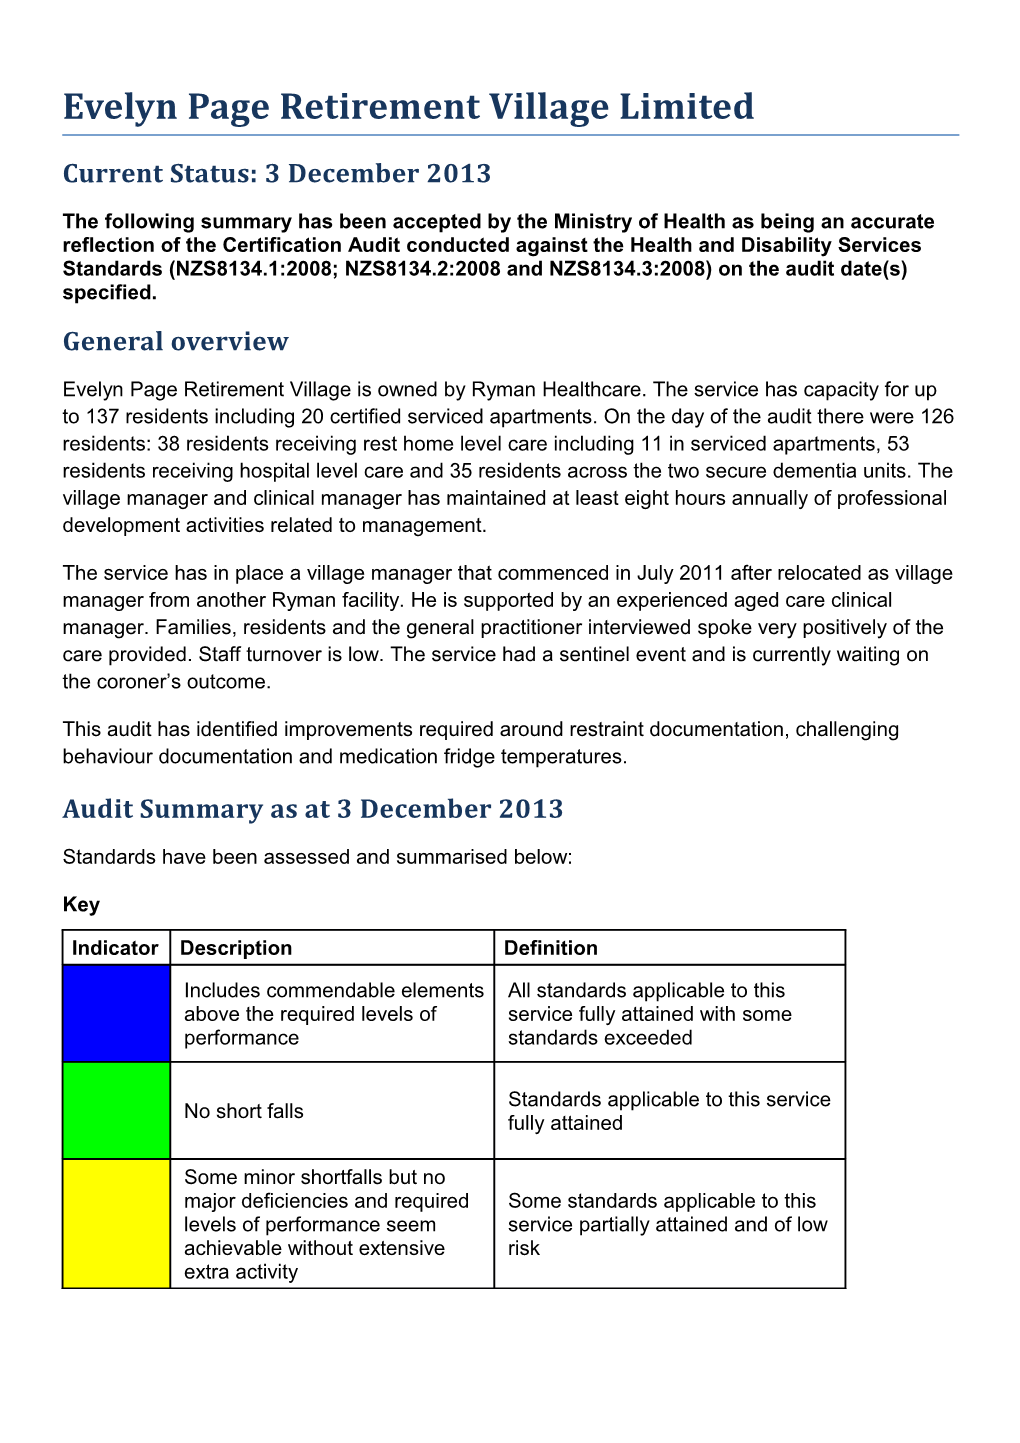 Certificaiton Audit Summary s8